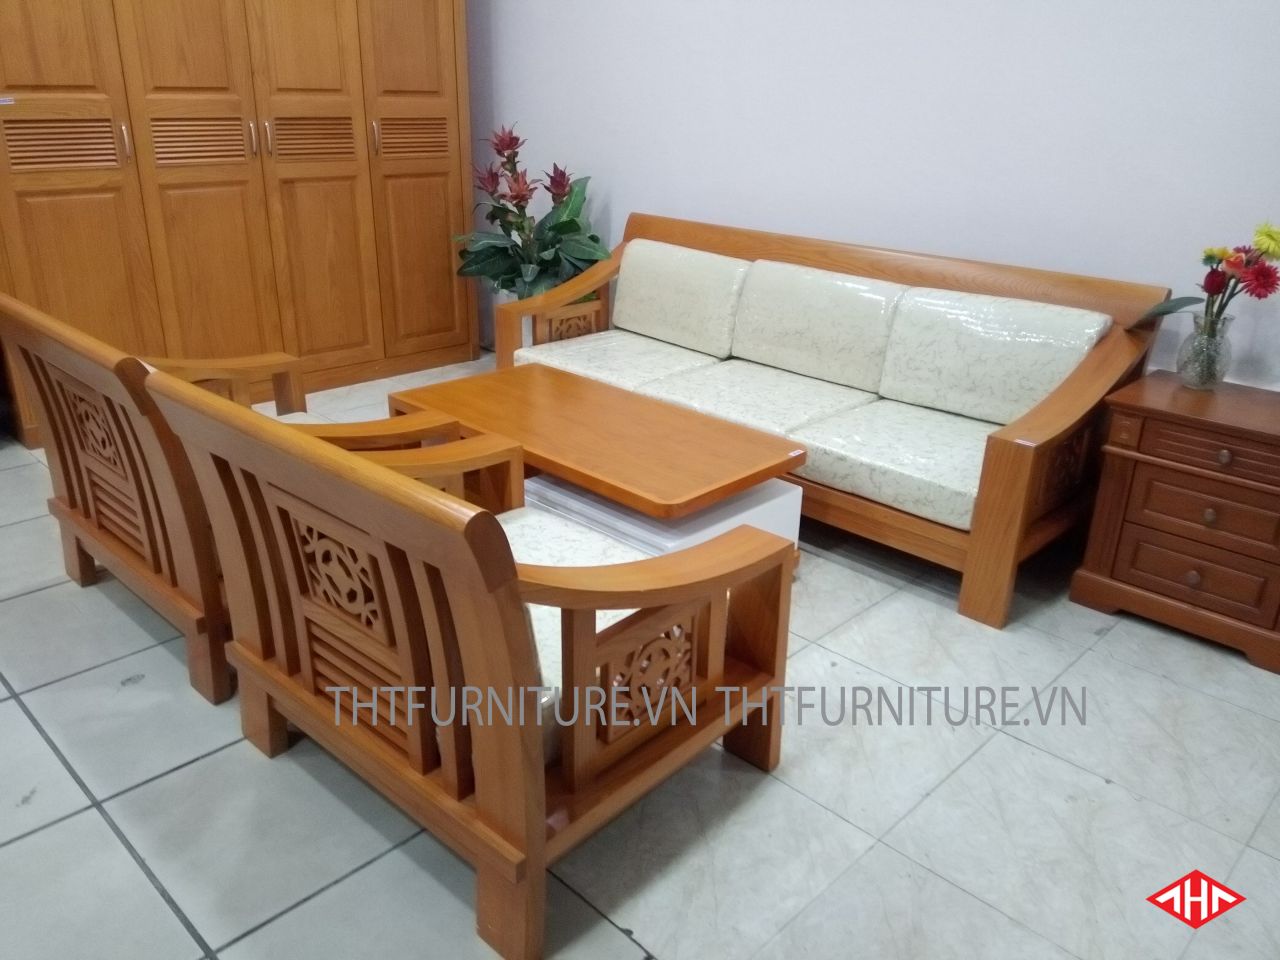 Sofa gỗ Sồi tân cổ điển kiểu dáng tối giản